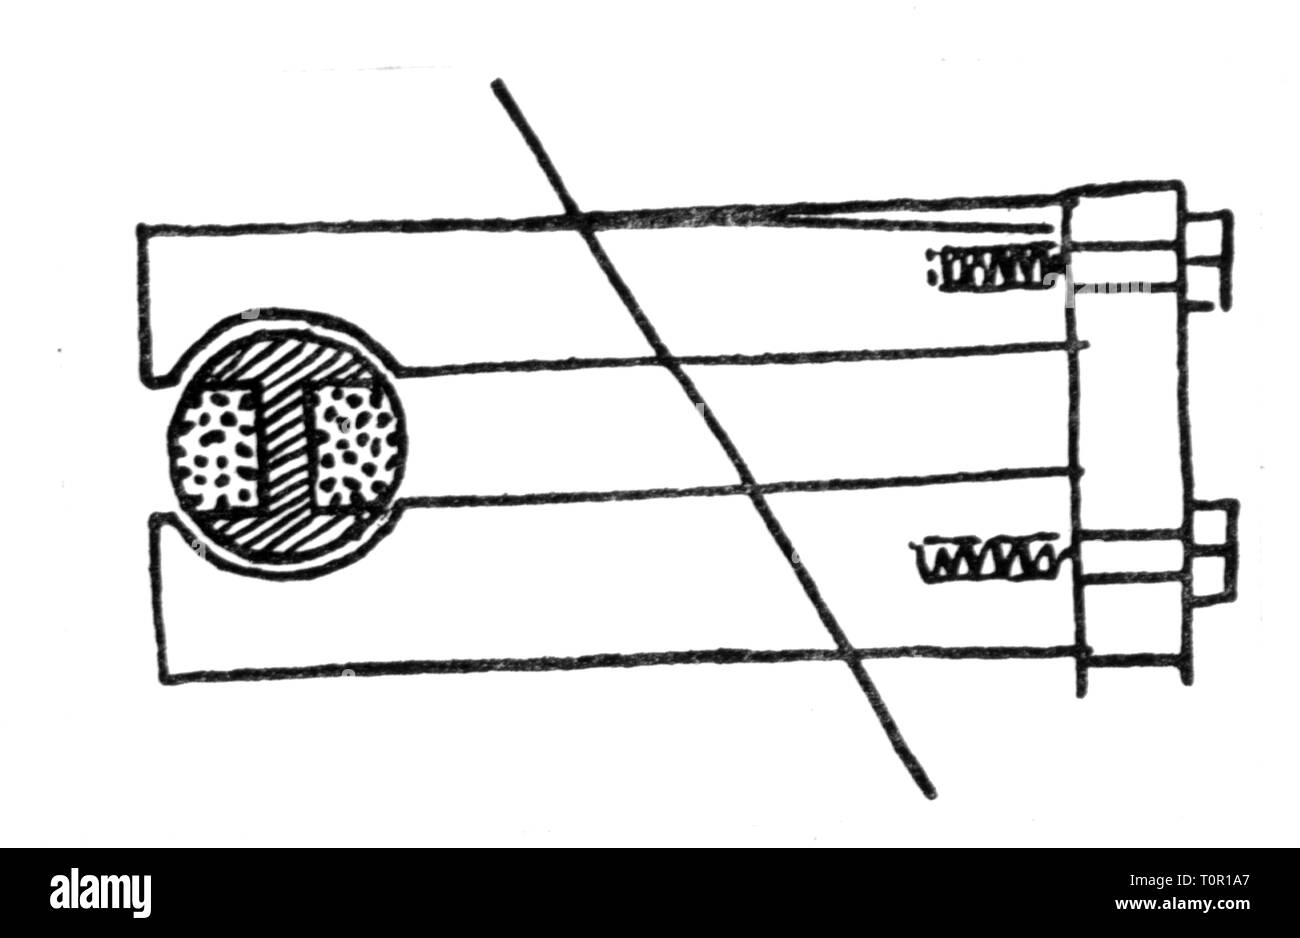 Technik, Elektrotechnik, Doppel-T-Anker von Werner Siemens, Zeichnung aus der Patentschrift 1856 Additional-Rights - Clearance-Info - Not-Available Stockfoto